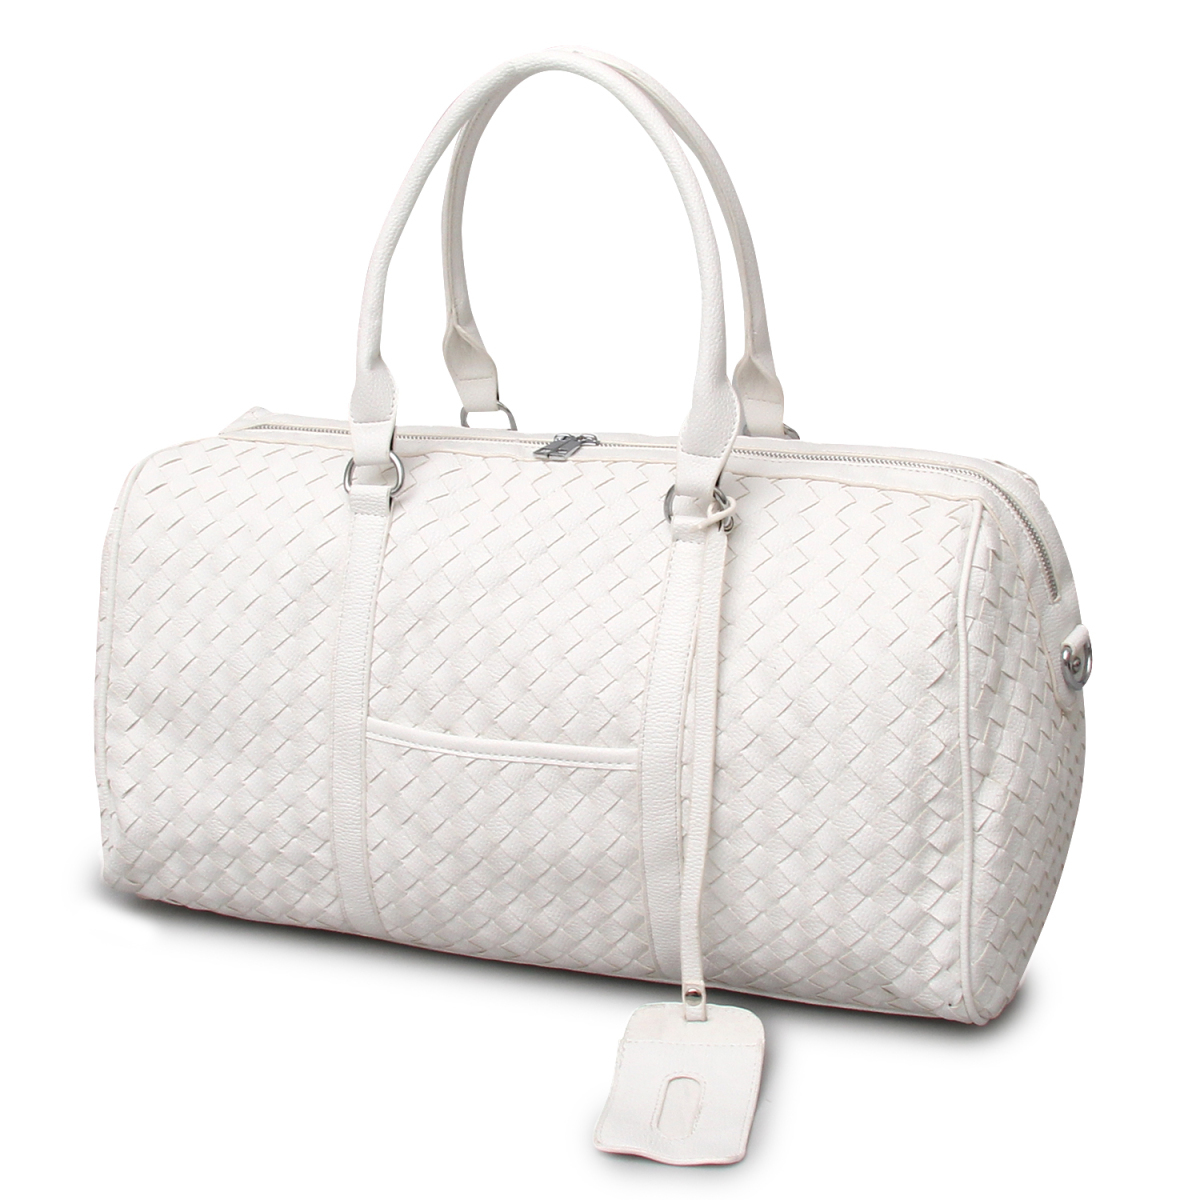 新品■ボストンバッグ 旅行 メンズ 2way イントレチャート ショルダー 肩掛け トラベル 旅行 編み込み 大容量 軽量 鞄 カバン ホワイト 白